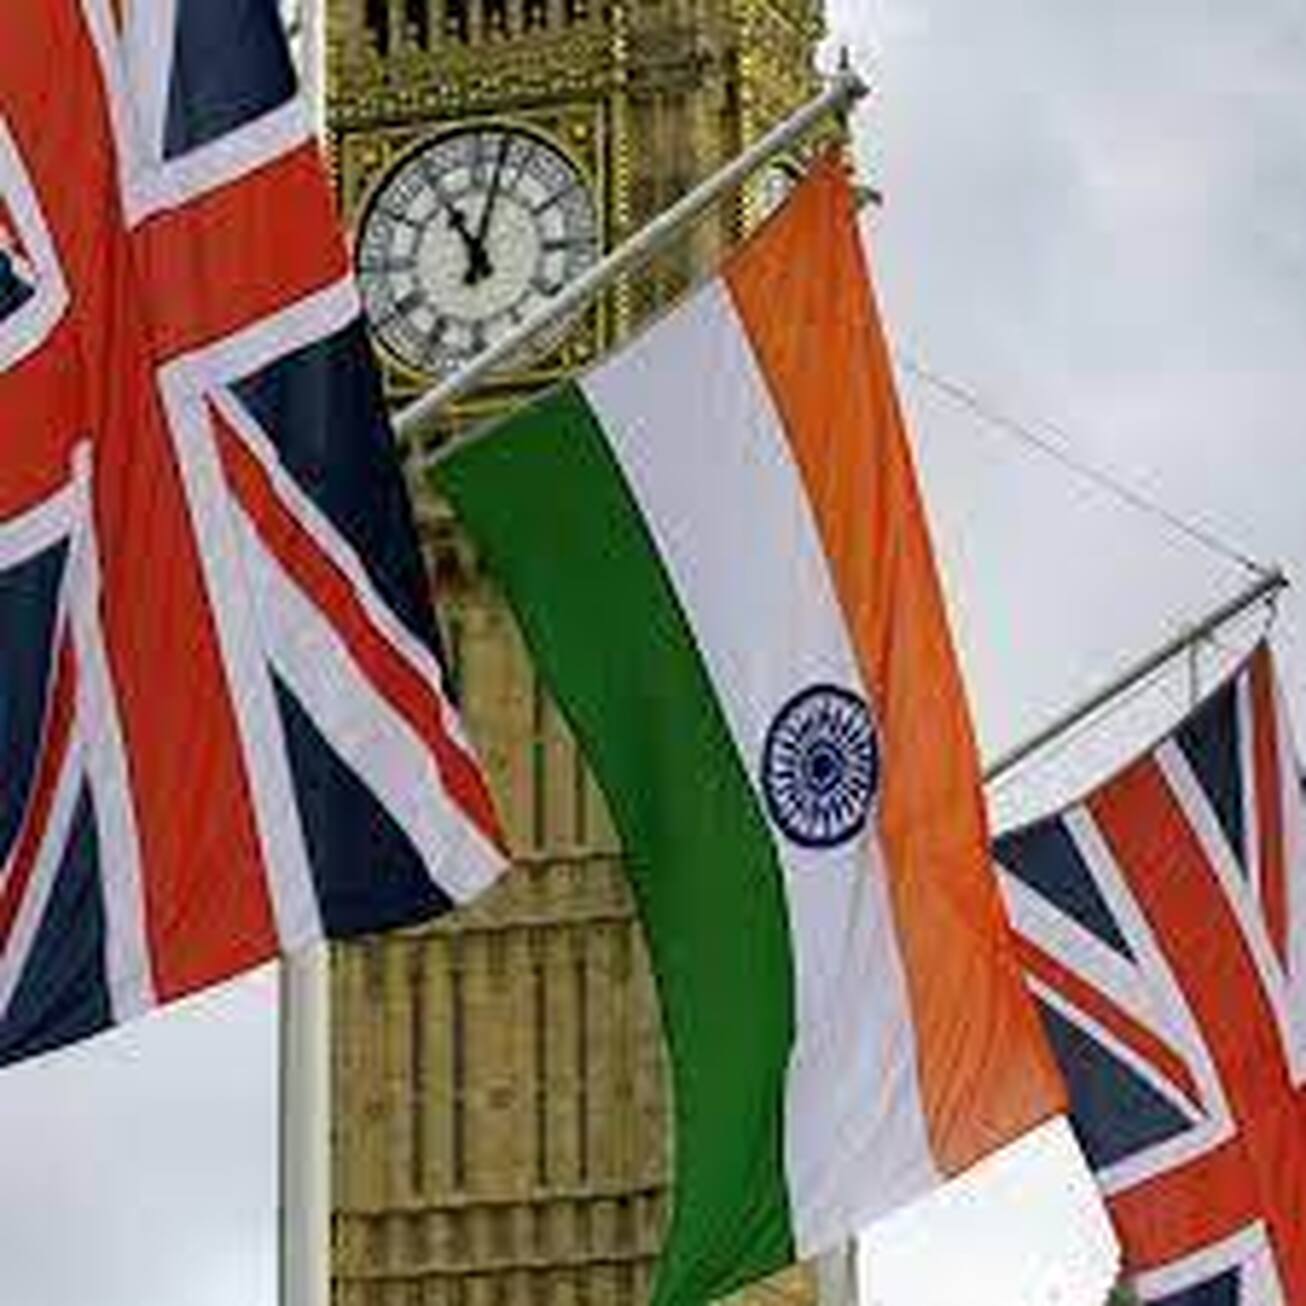 کشمکش هند و بریتانیا بر سر توافق تجارت آزاد